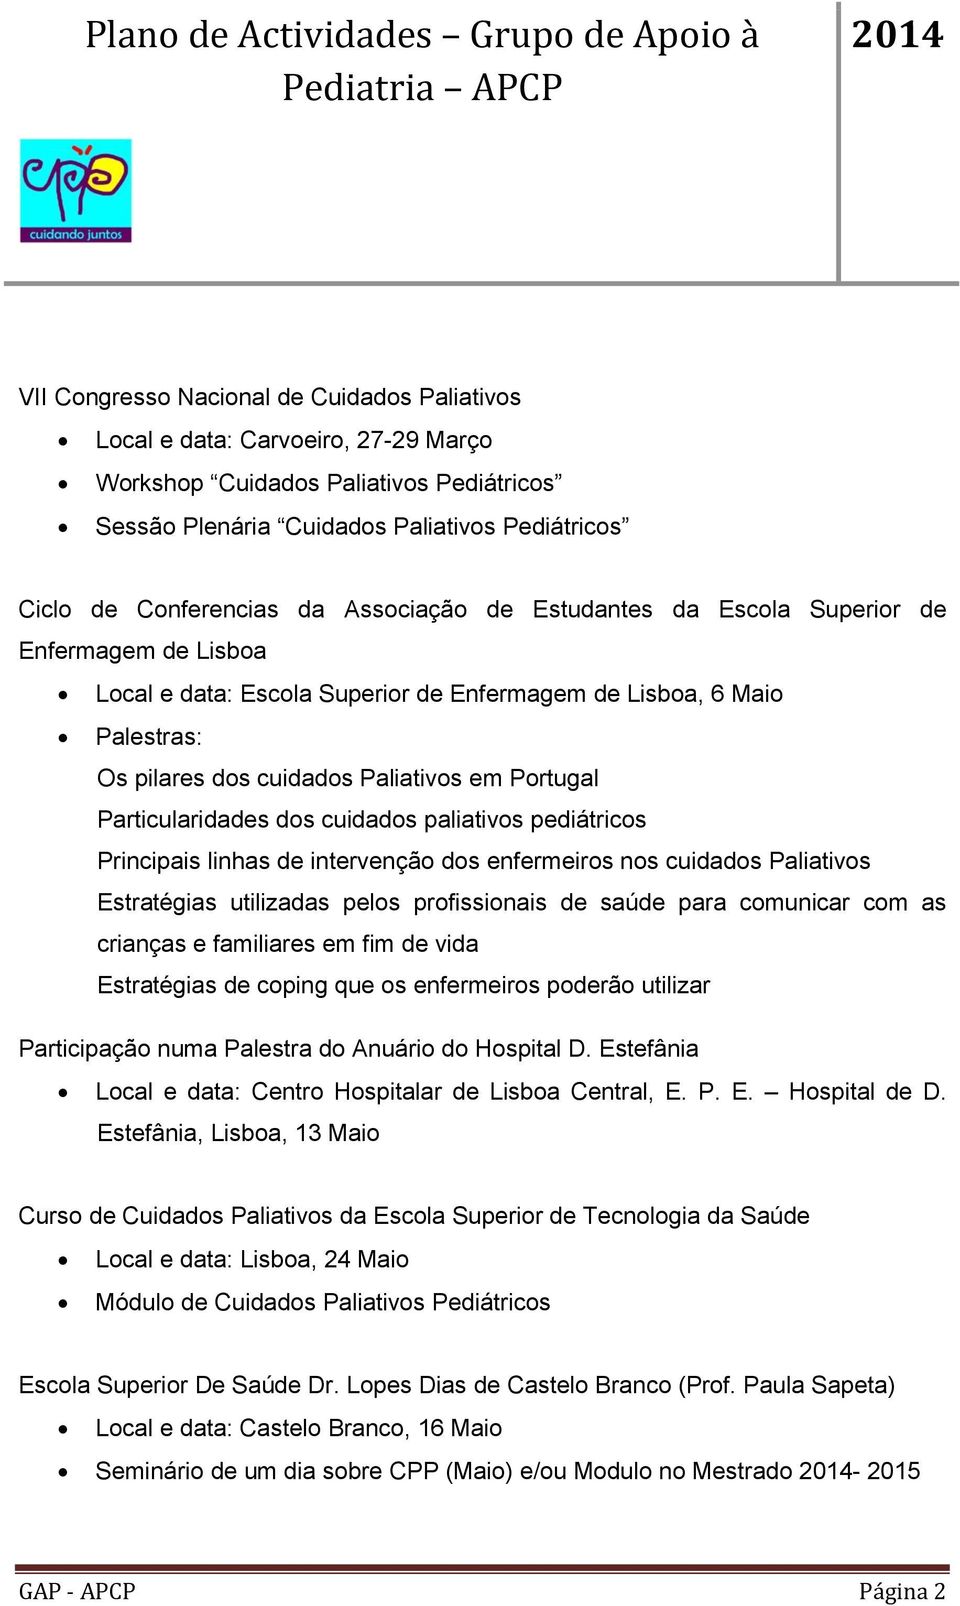 Particularidades dos cuidados paliativos pediátricos Principais linhas de intervenção dos enfermeiros nos cuidados Paliativos Estratégias utilizadas pelos profissionais de saúde para comunicar com as